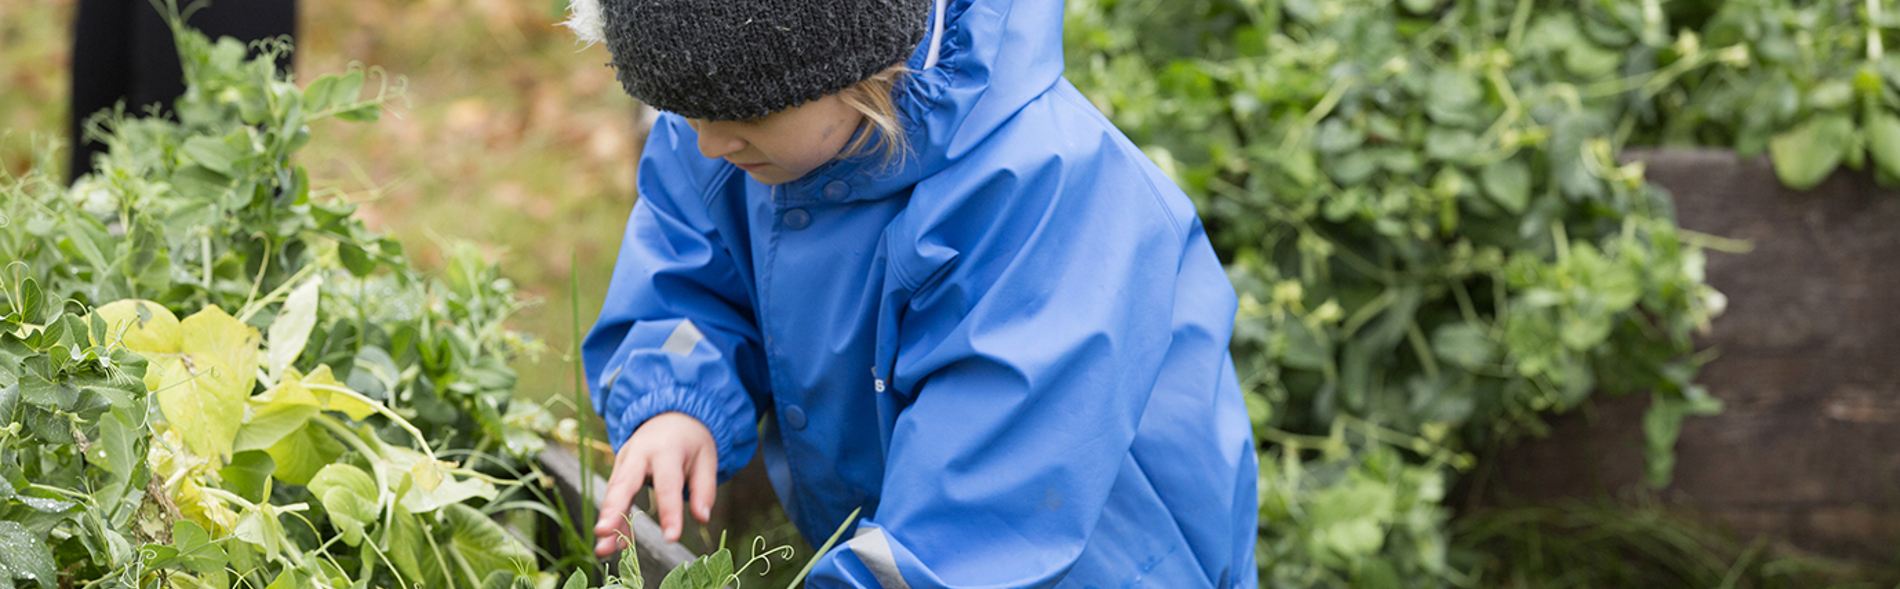 Barn plockar grönsaker från en odlingslåda